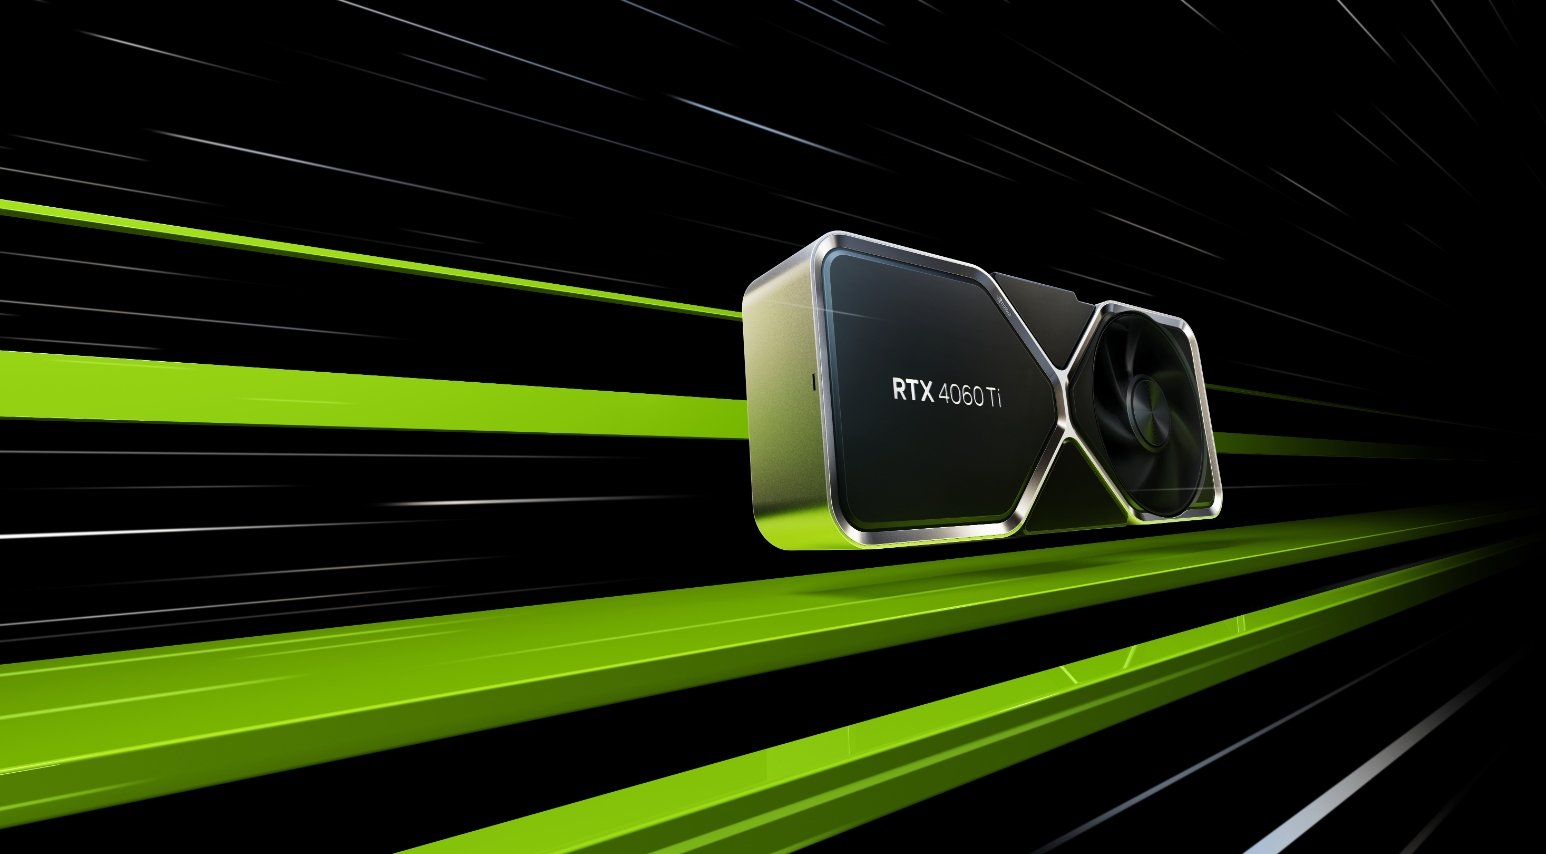 Nvidia RTX 4060 Ti